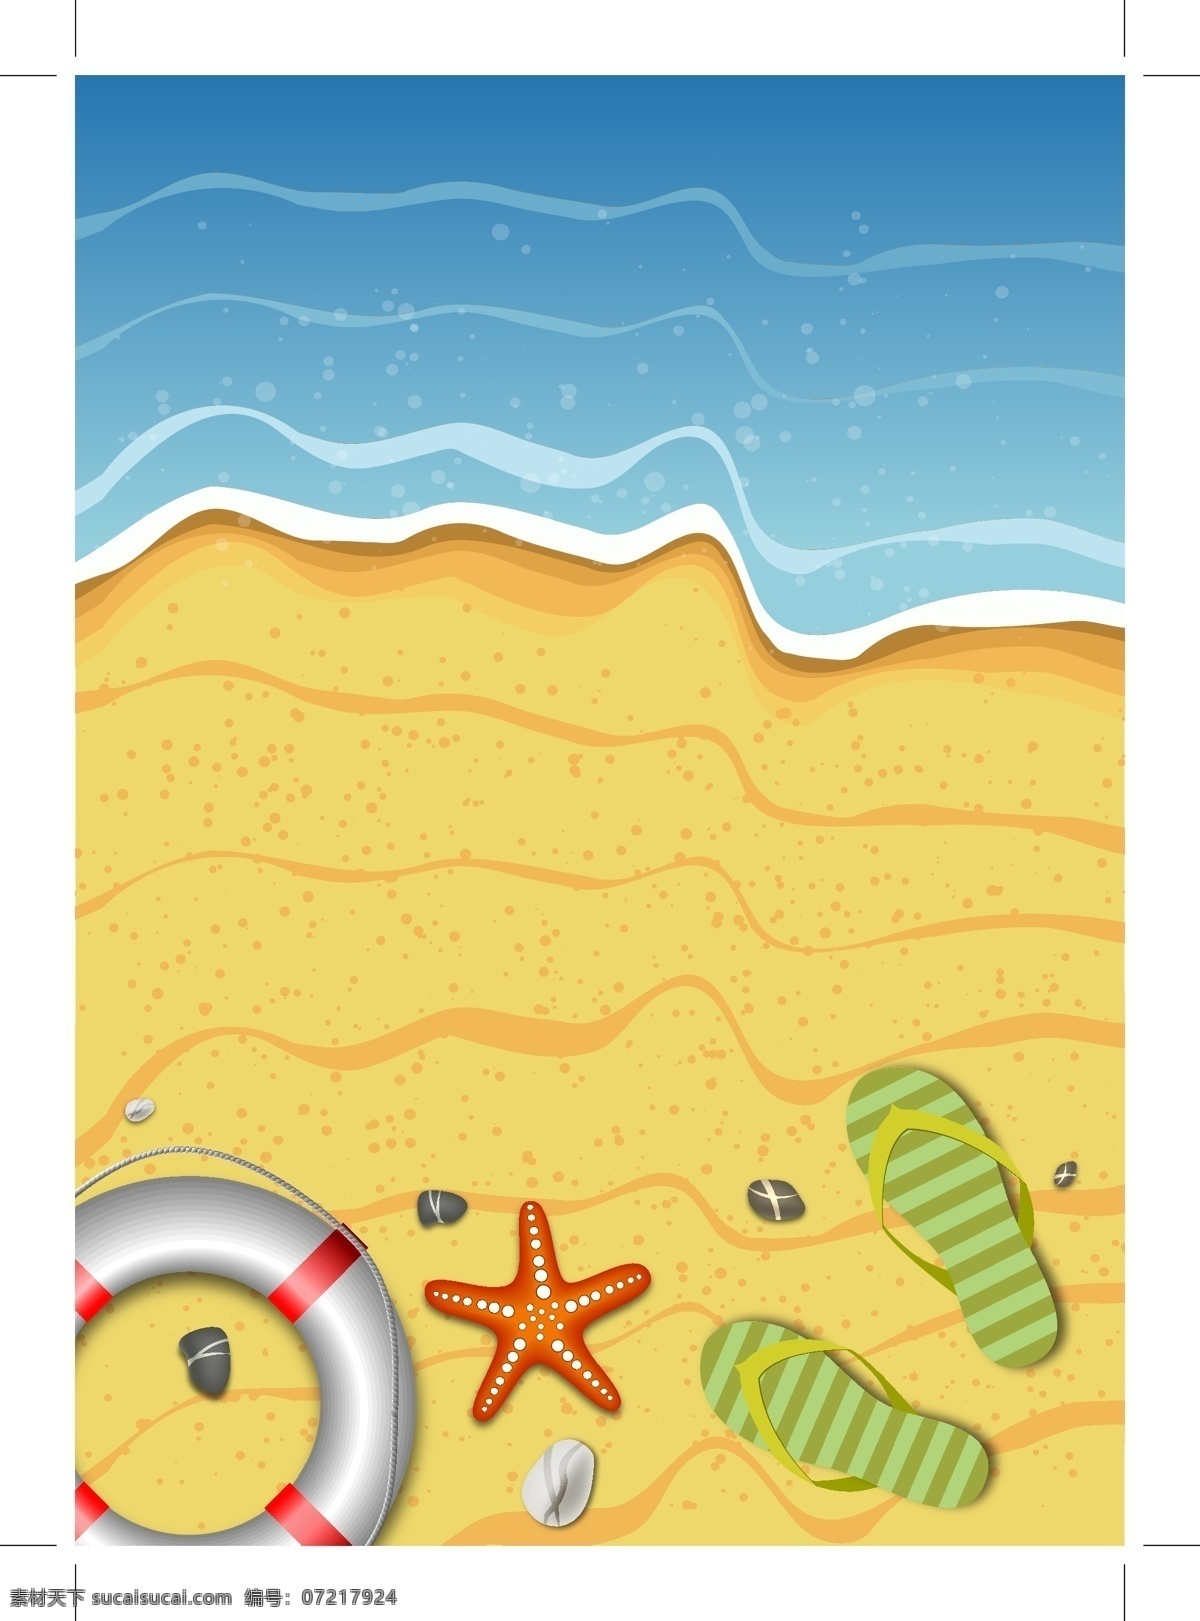 夏季 沙滩 风景 矢量 海星 游泳圈 拖鞋 海滩 海水 沙子 度假 矢量图 黄色